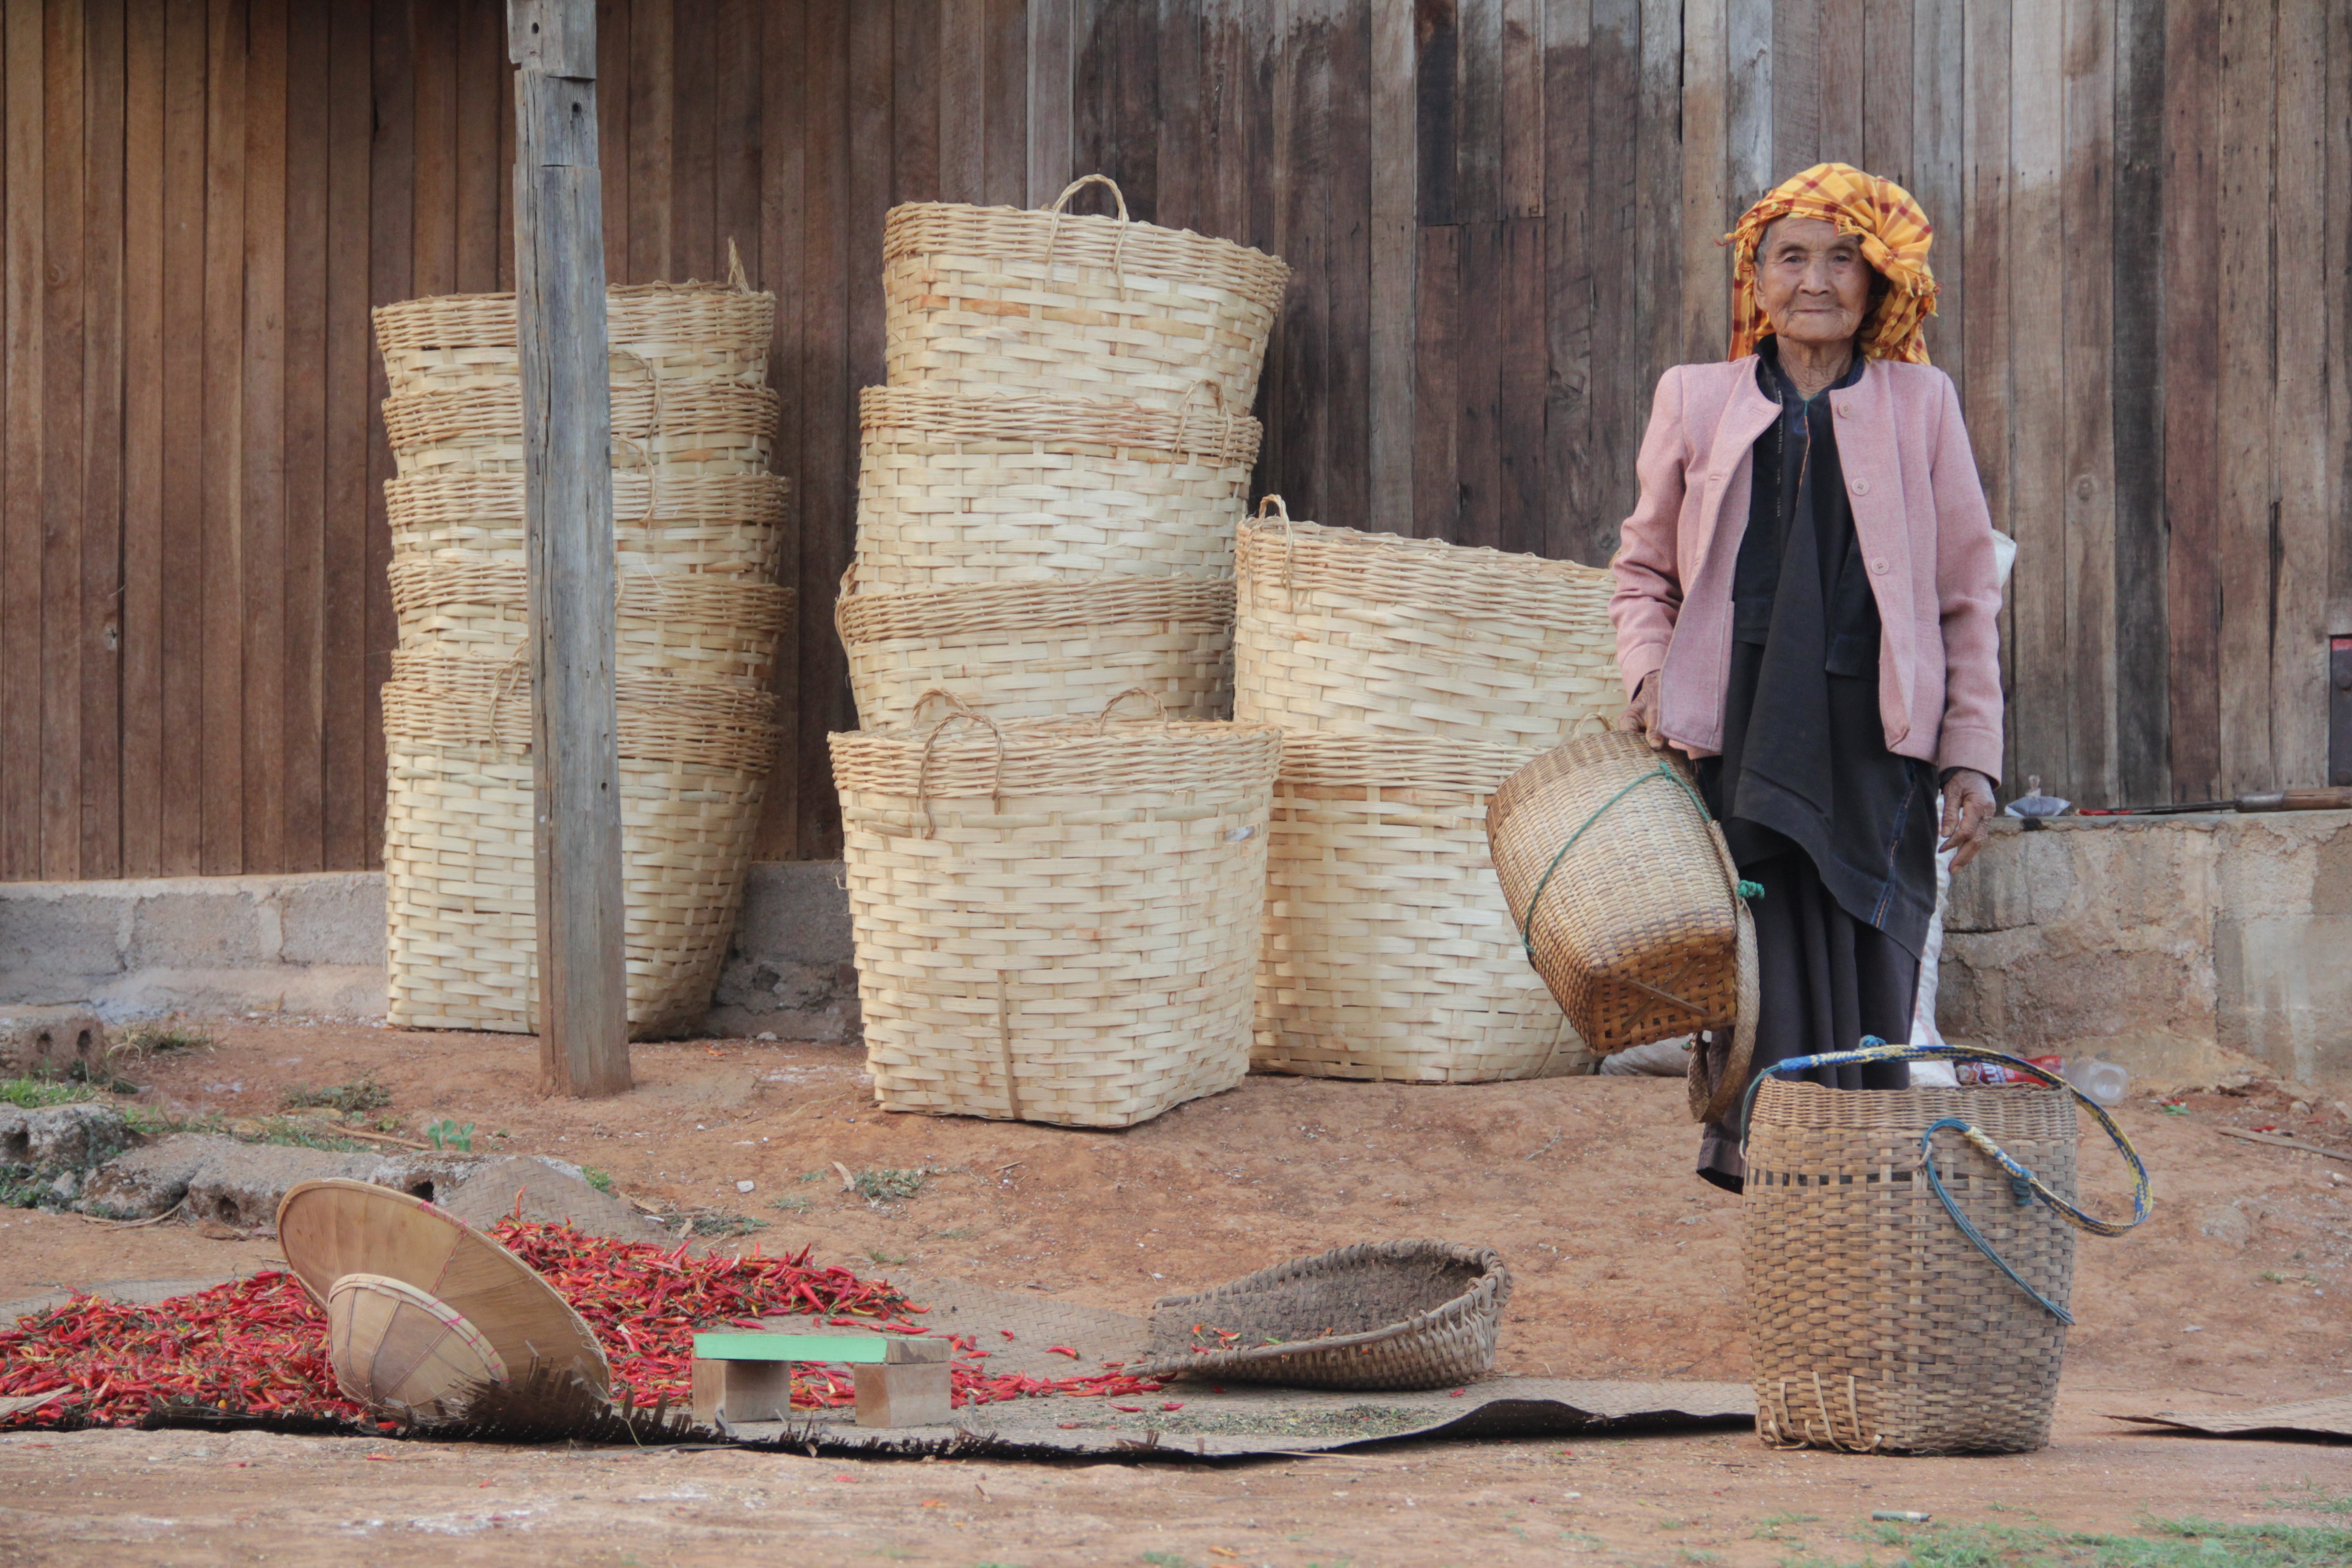 Dans le village de Kyautsu, cette femme s'apprête à remplir les paniers de chili, une des plus grosses productions de la région (© Jérôme Decoster).